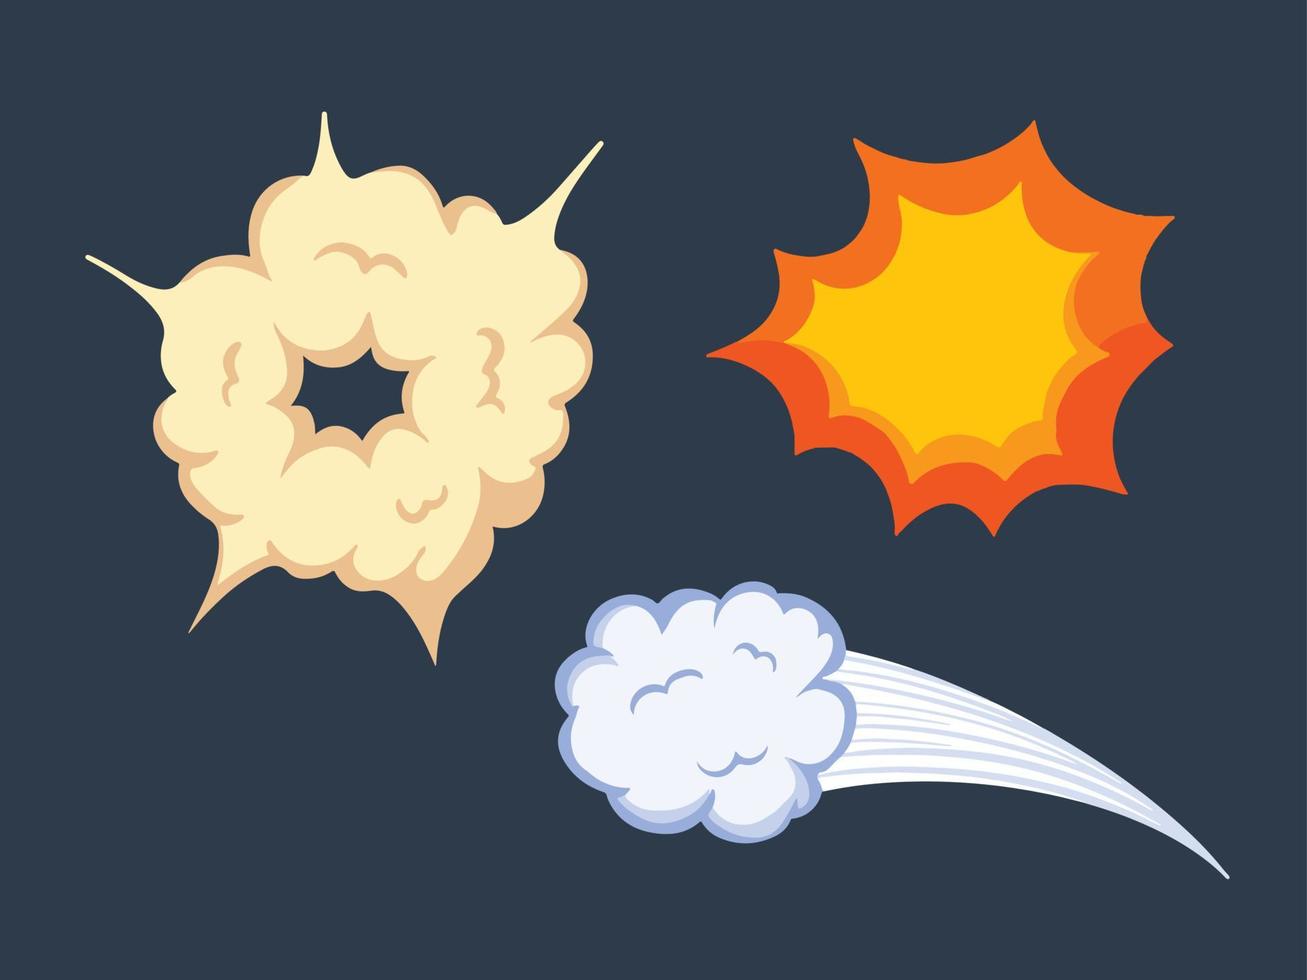 nuvole, boom, e whoosh cartone animato effetto decorazione impostare. vettore illustrazione di esplosione elemento disegno con cartone animato piatto arte stile e vivace colori